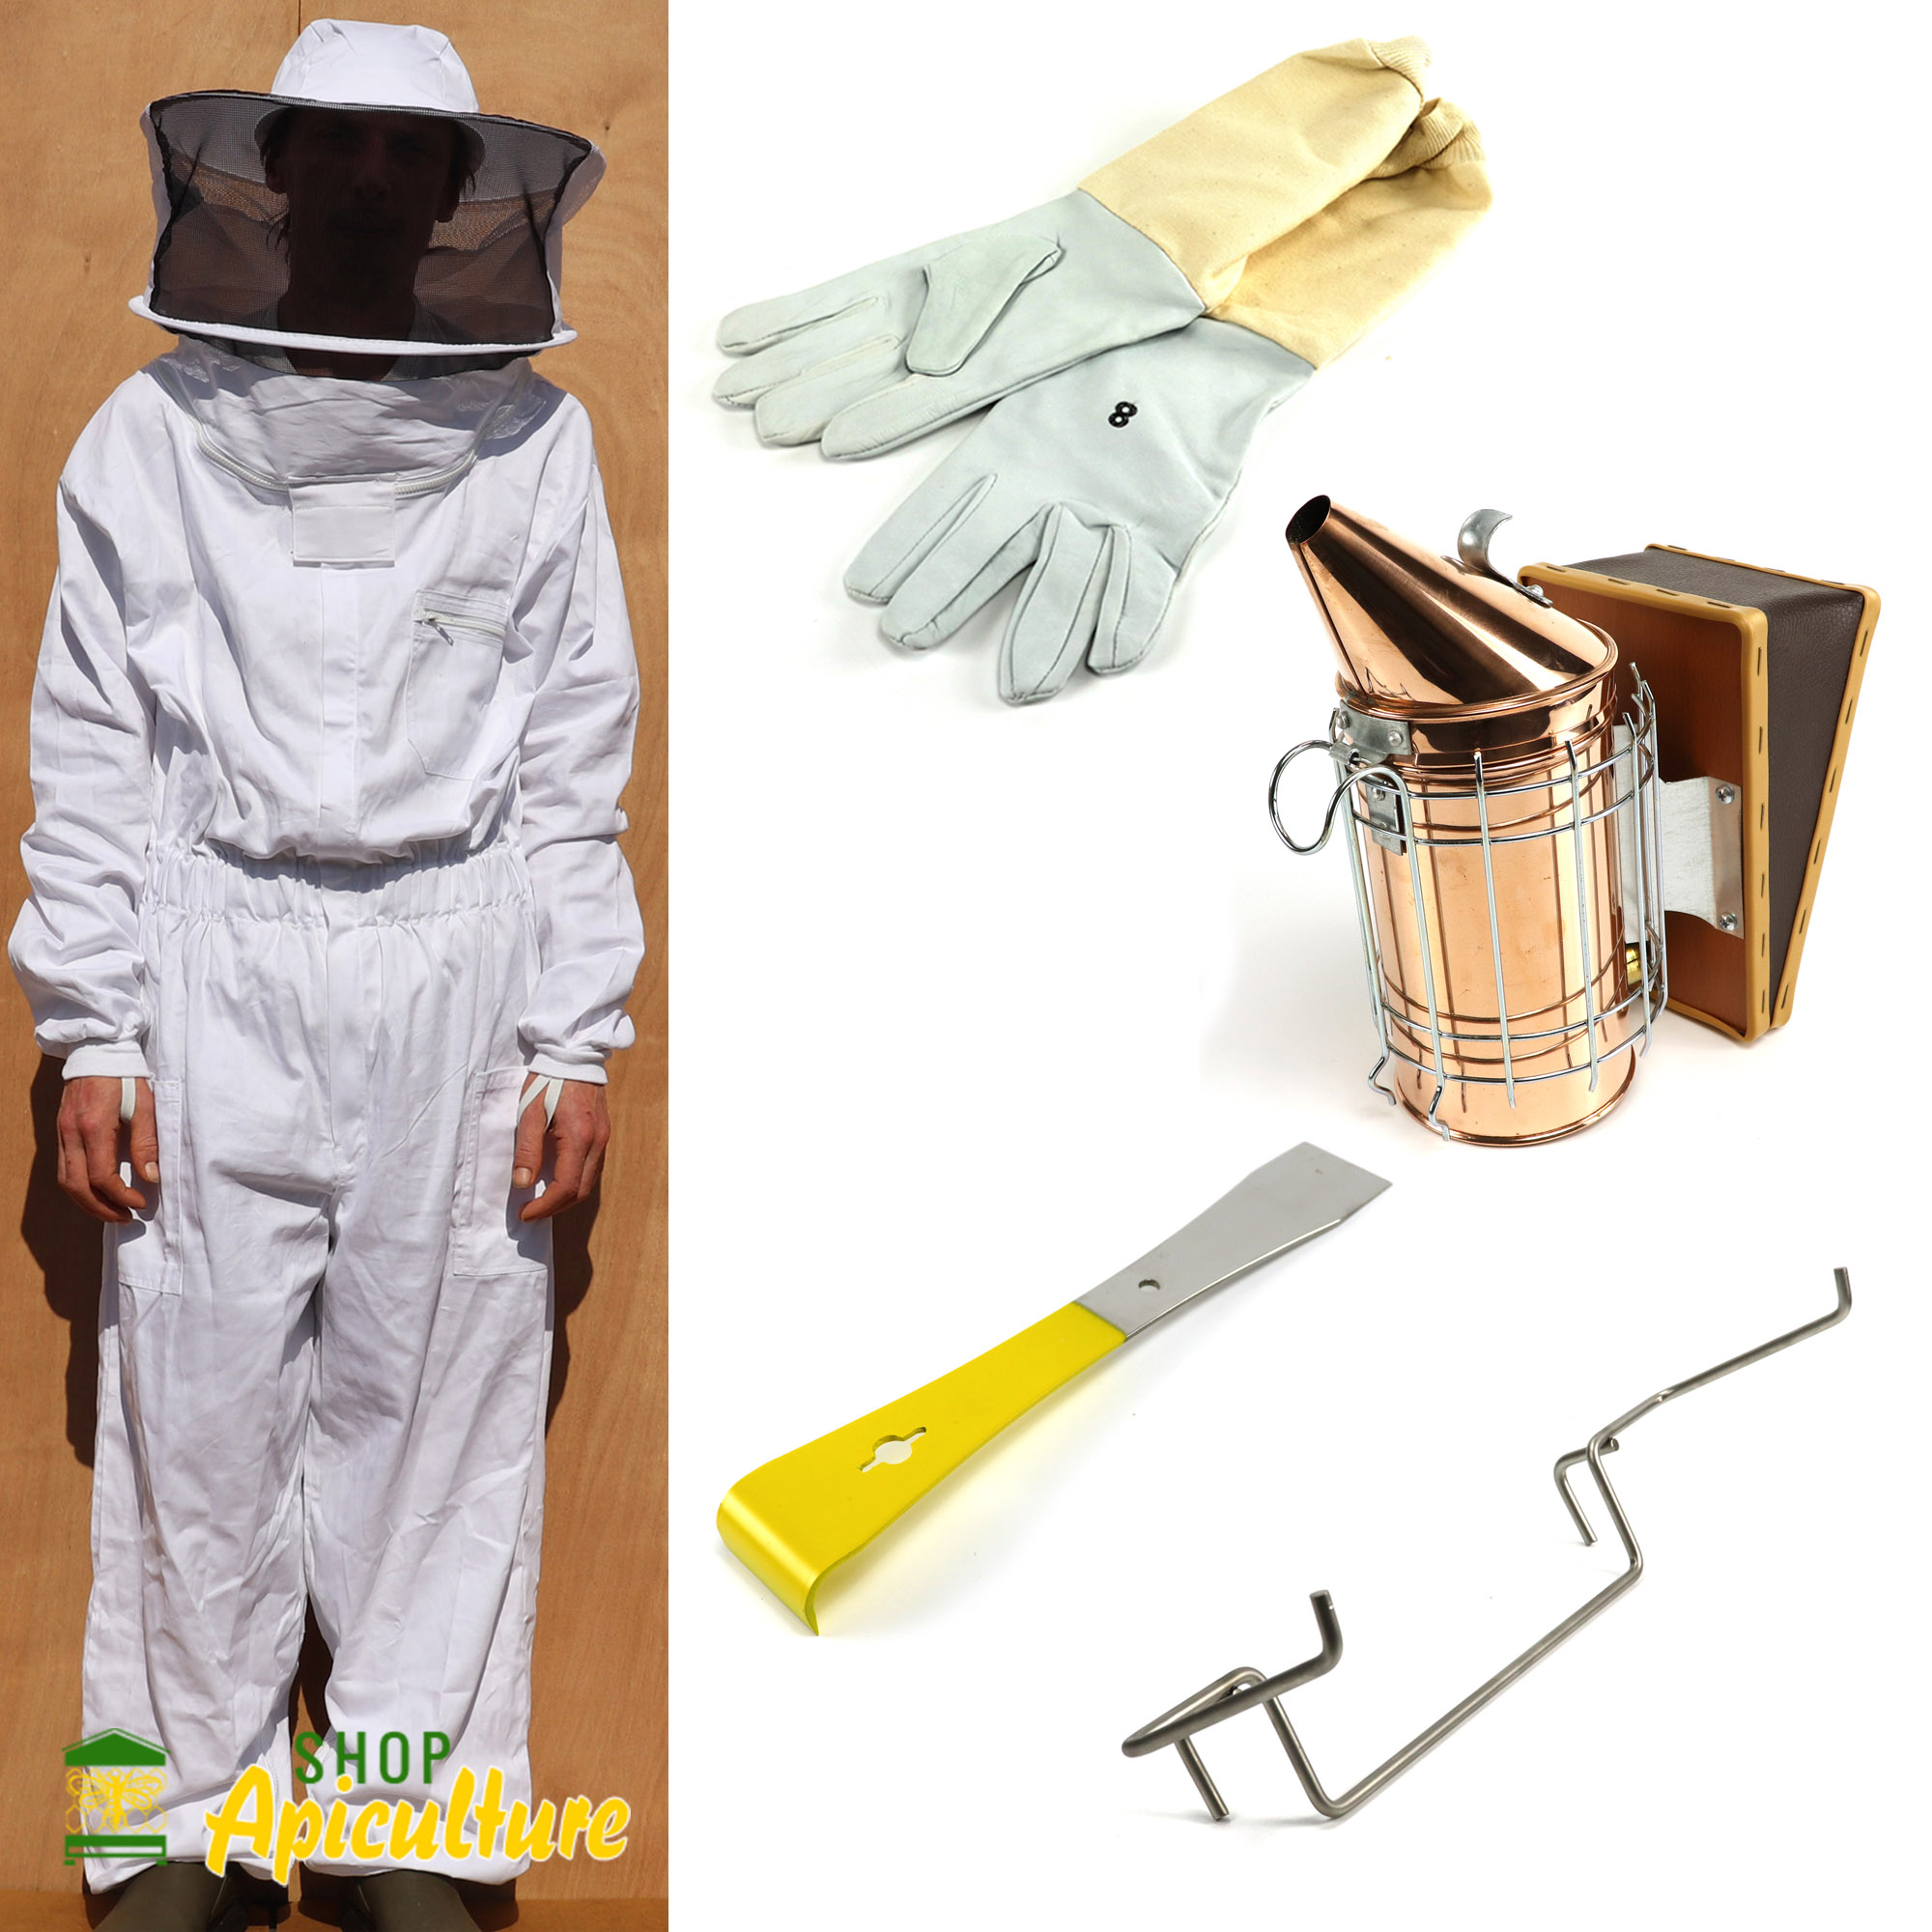 ENFUMOIR INOX AVEC PROTECTION DIAMÈTRE 100 MM PP 8061 : SHOP APICULTURE:  Tout le matériel pour l'apiculture, l'apiculteur et les abeilles.